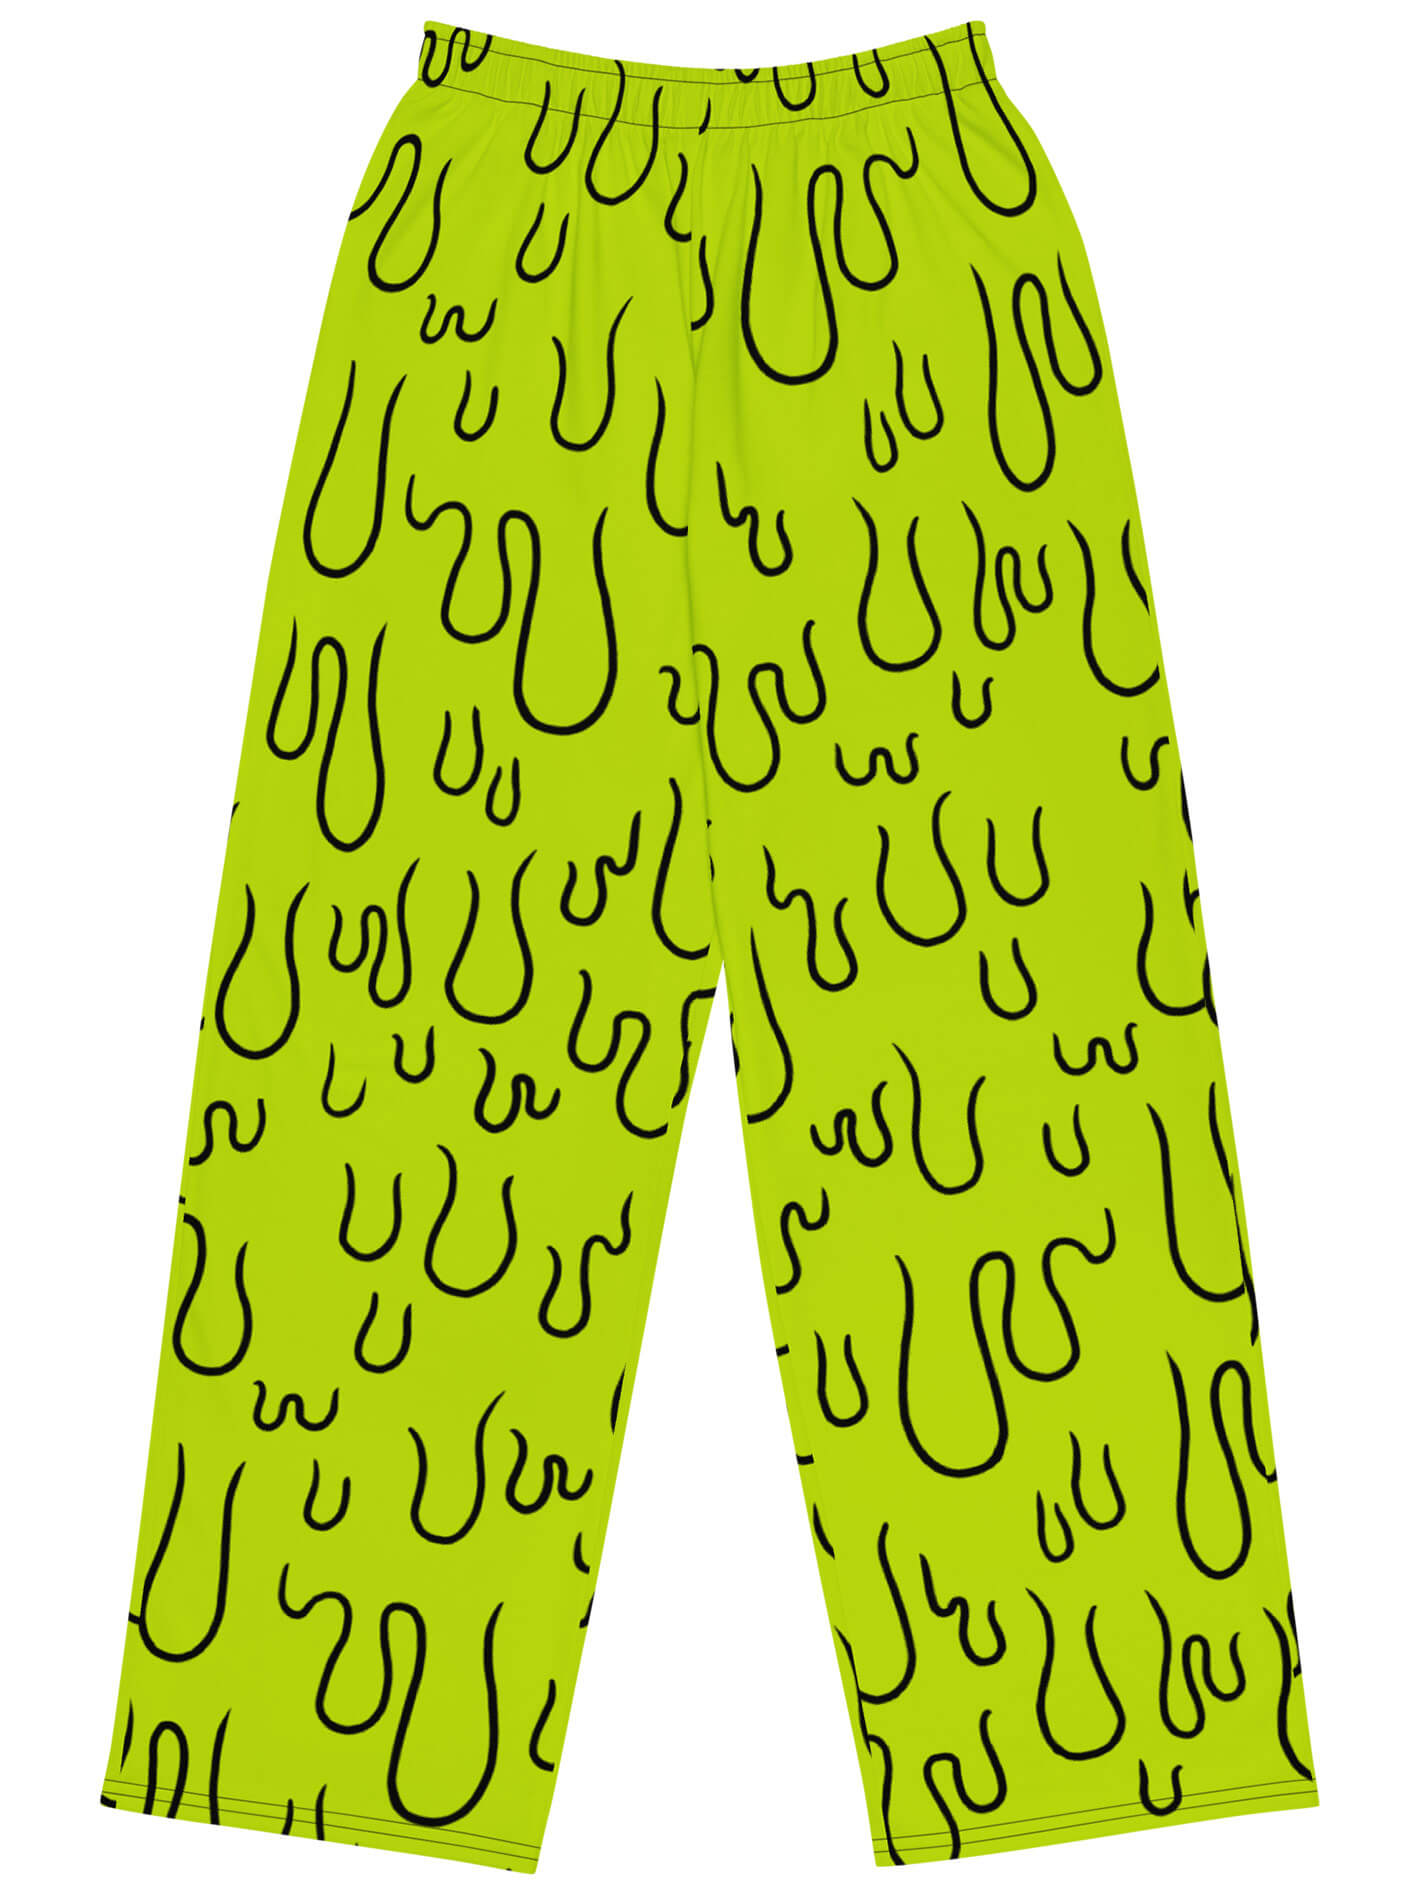 Green monster slime pants.